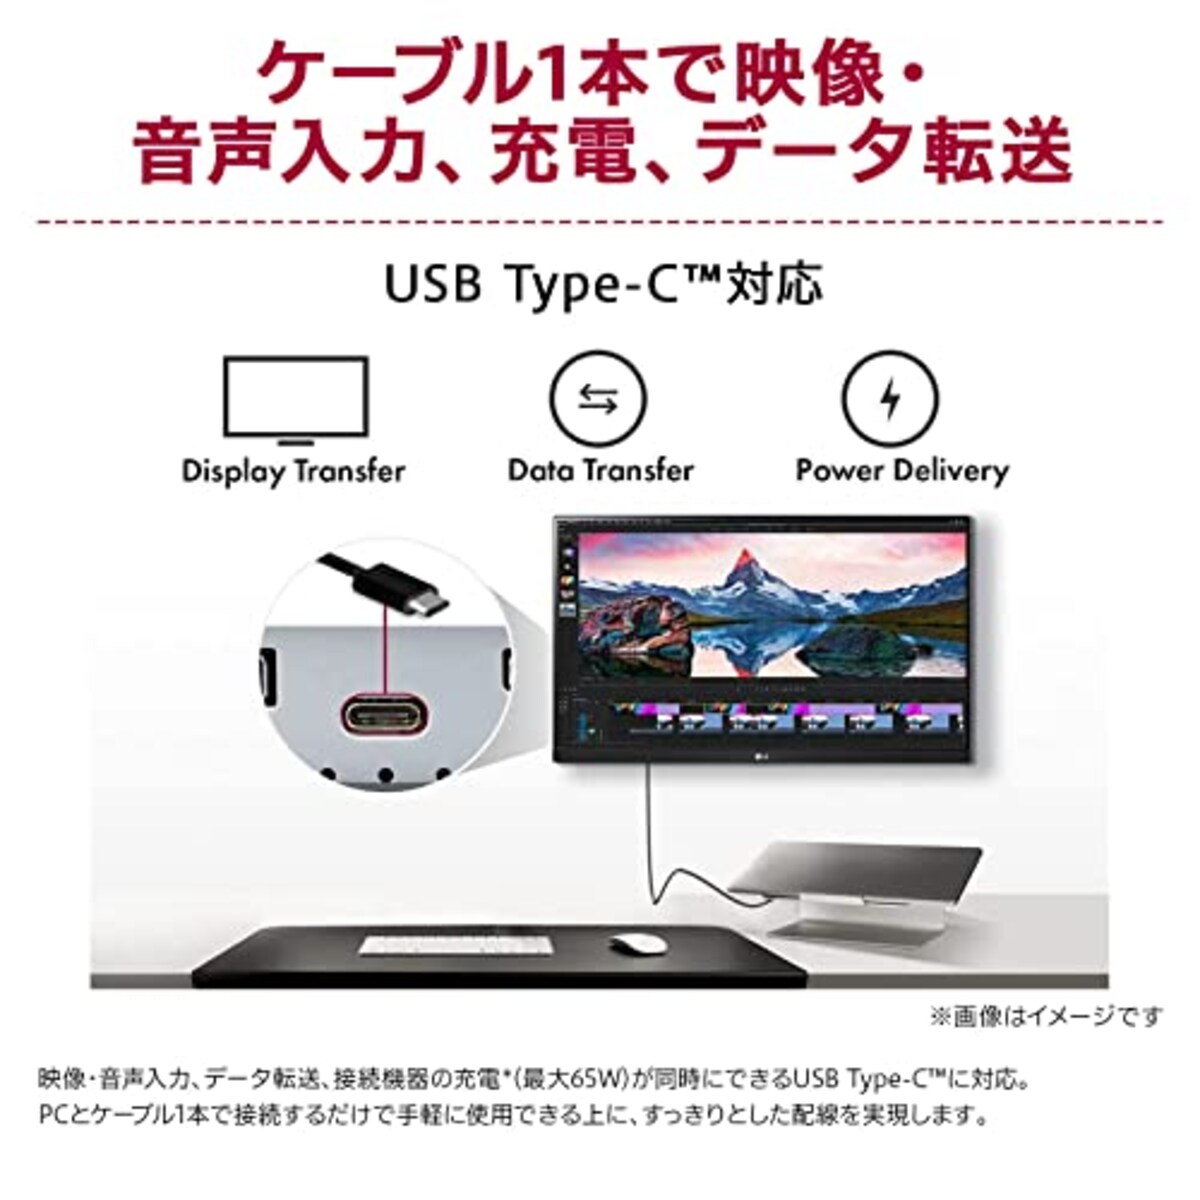  LG 2wayスタンド モニター ディスプレイ 27BQ70QC-S 27インチ/WQHD(2560×1440)/IPSアンチグレア/HDR/sRGB 99%/USB Type-C,HDMI/FreeSync/Webカメラ, スピーカー, マイク/フリッカーセーフ, ブルーライト低減機能/3年安心・無輝点保証画像4 